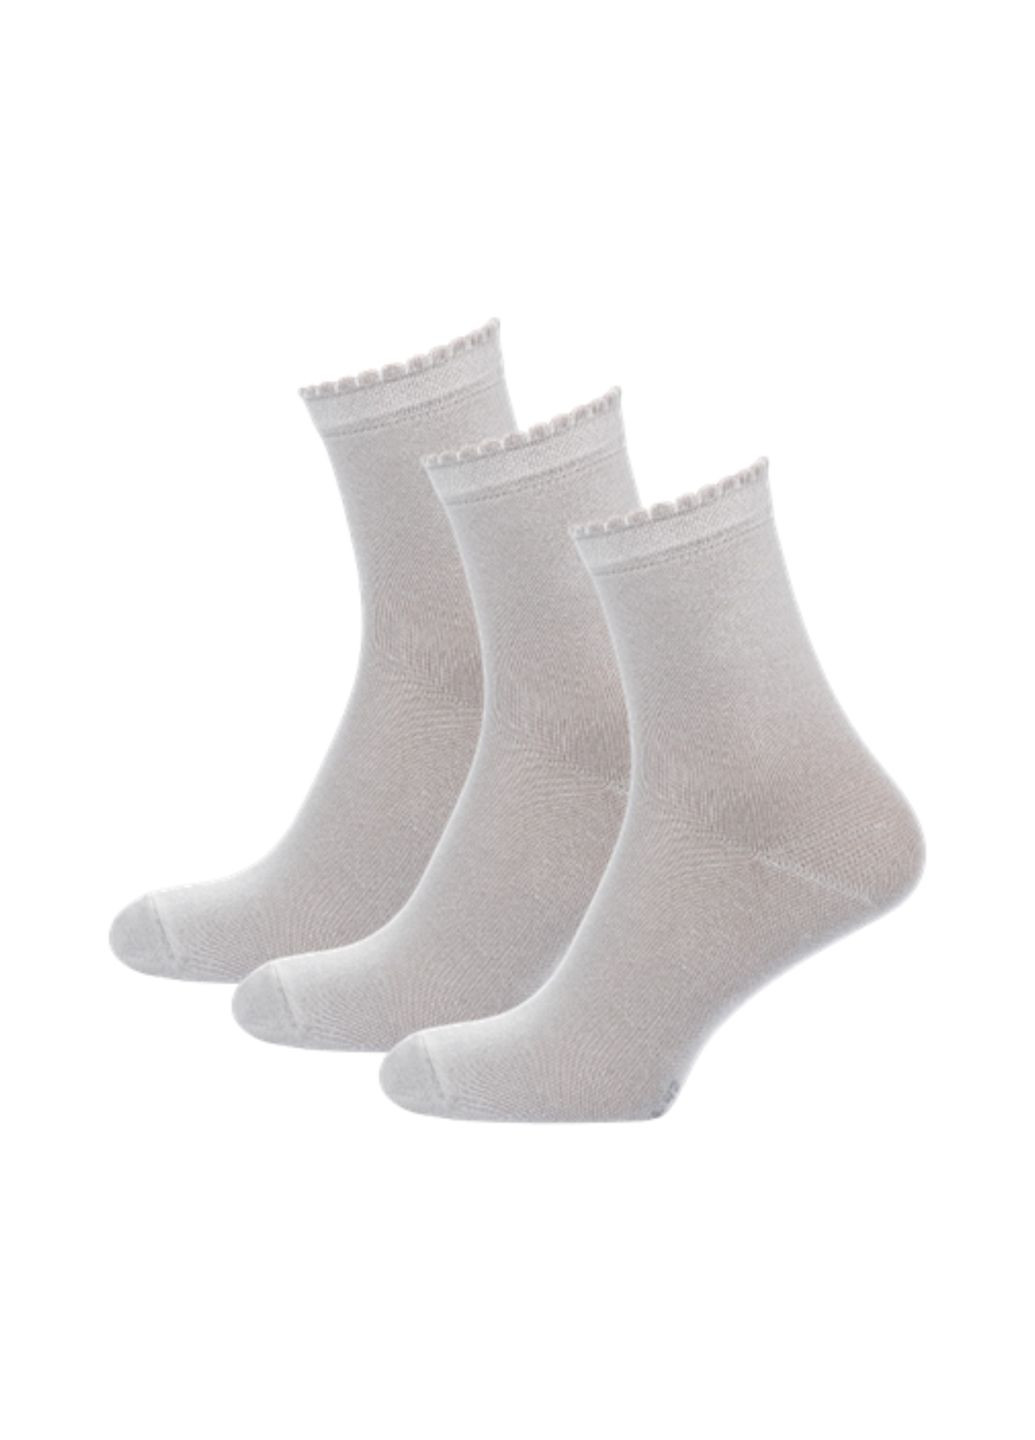 RFT Шкарпетки жіночі класичні. Набір (3 шт.) Siela rt1312-053_набори (260063074)